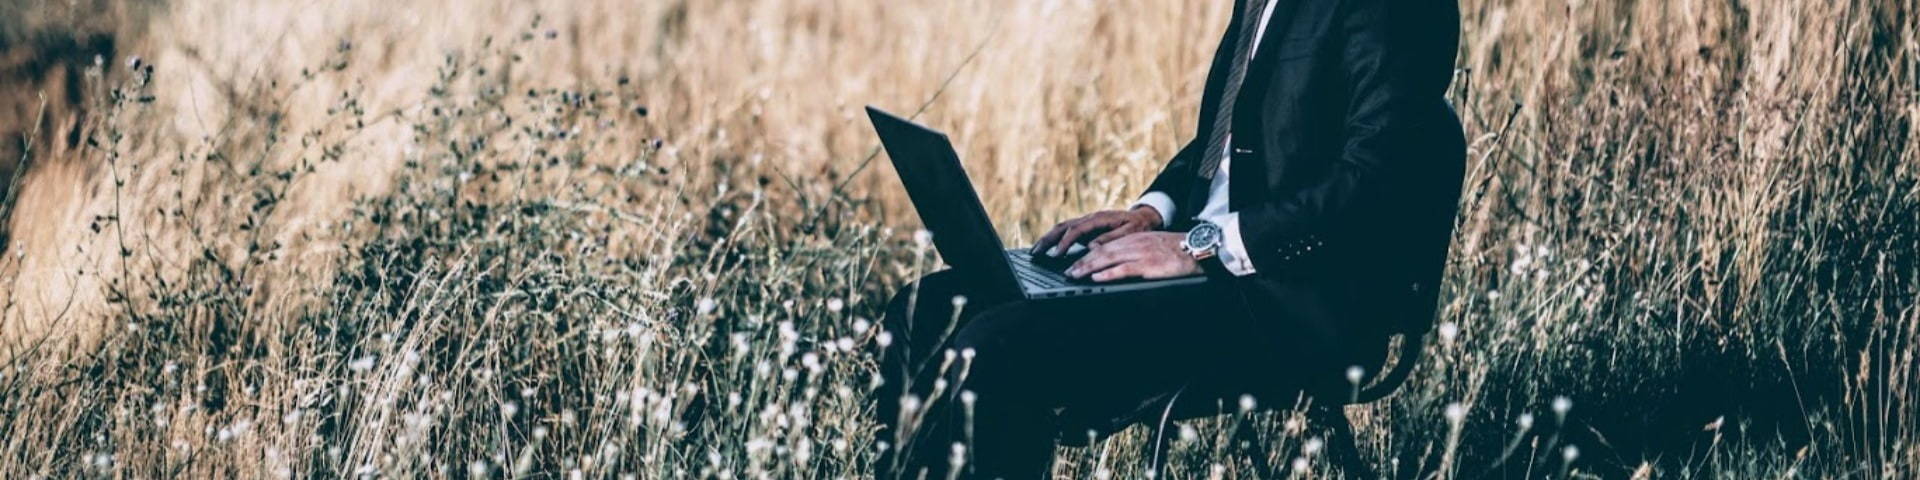 businessman sat in field on laptop